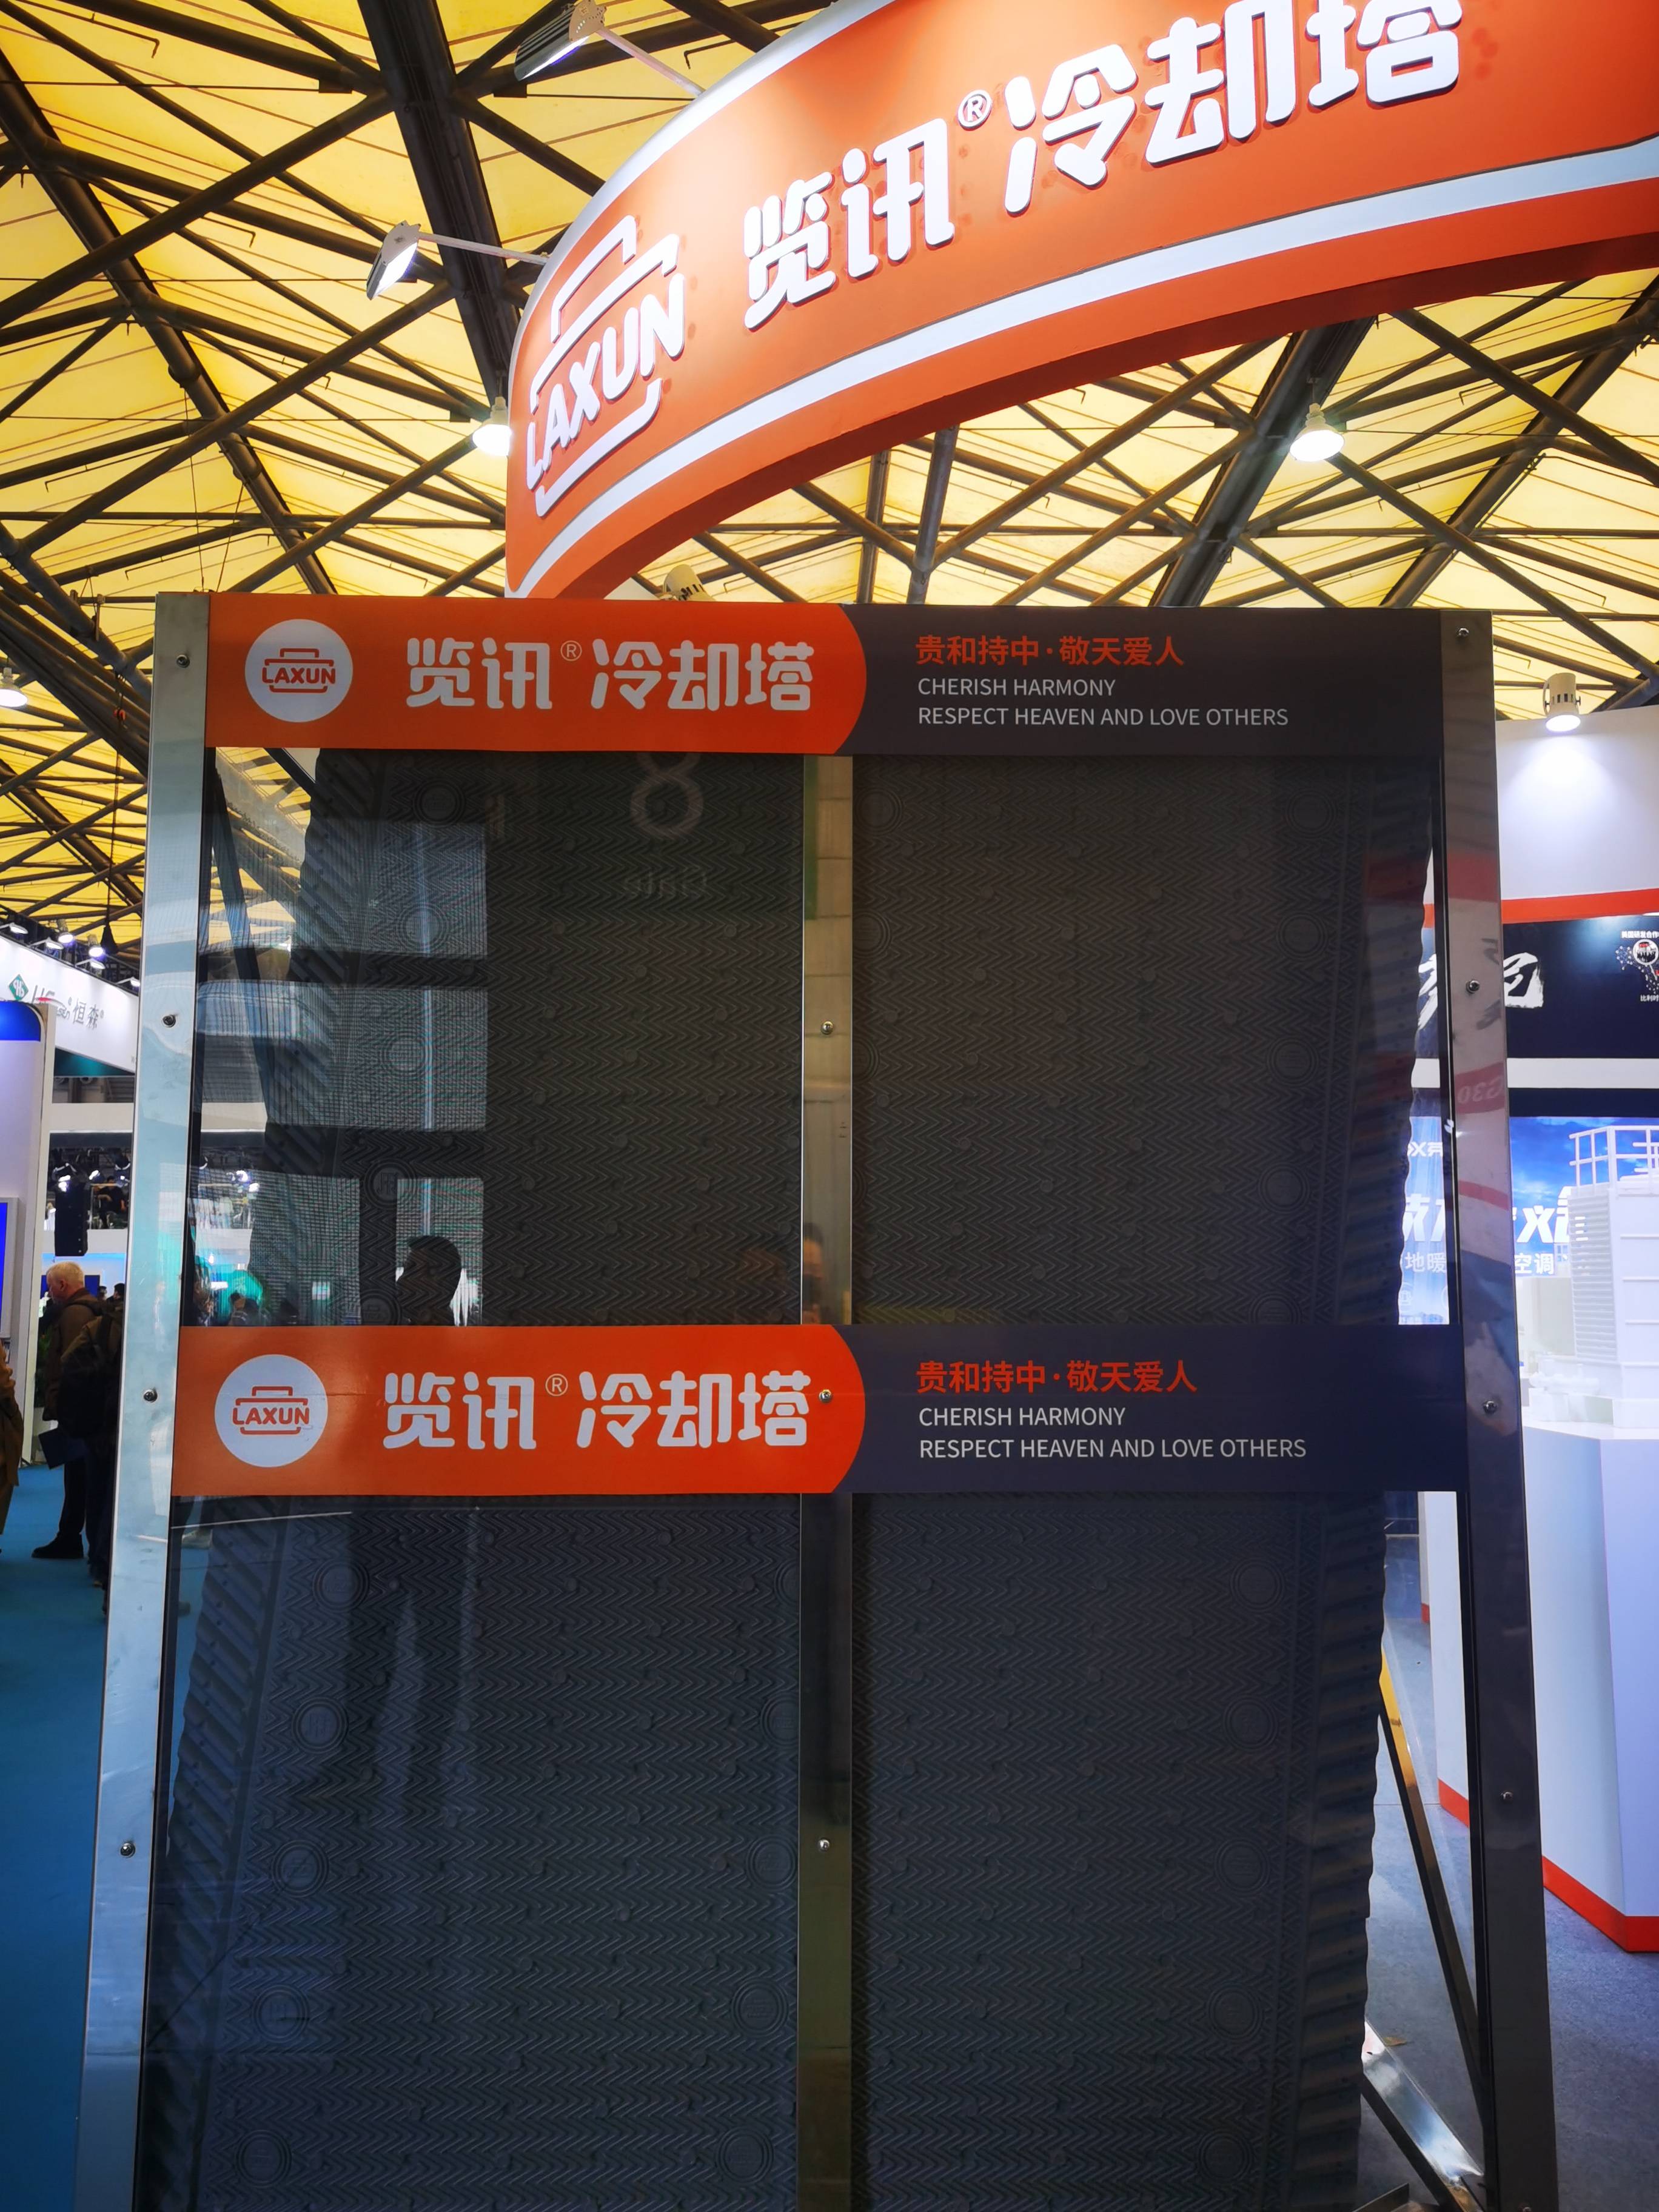 中国上海制冷展盛大举行！览讯在 W2 展馆（展位号 W2G31），恭候您的莅临！(图5)